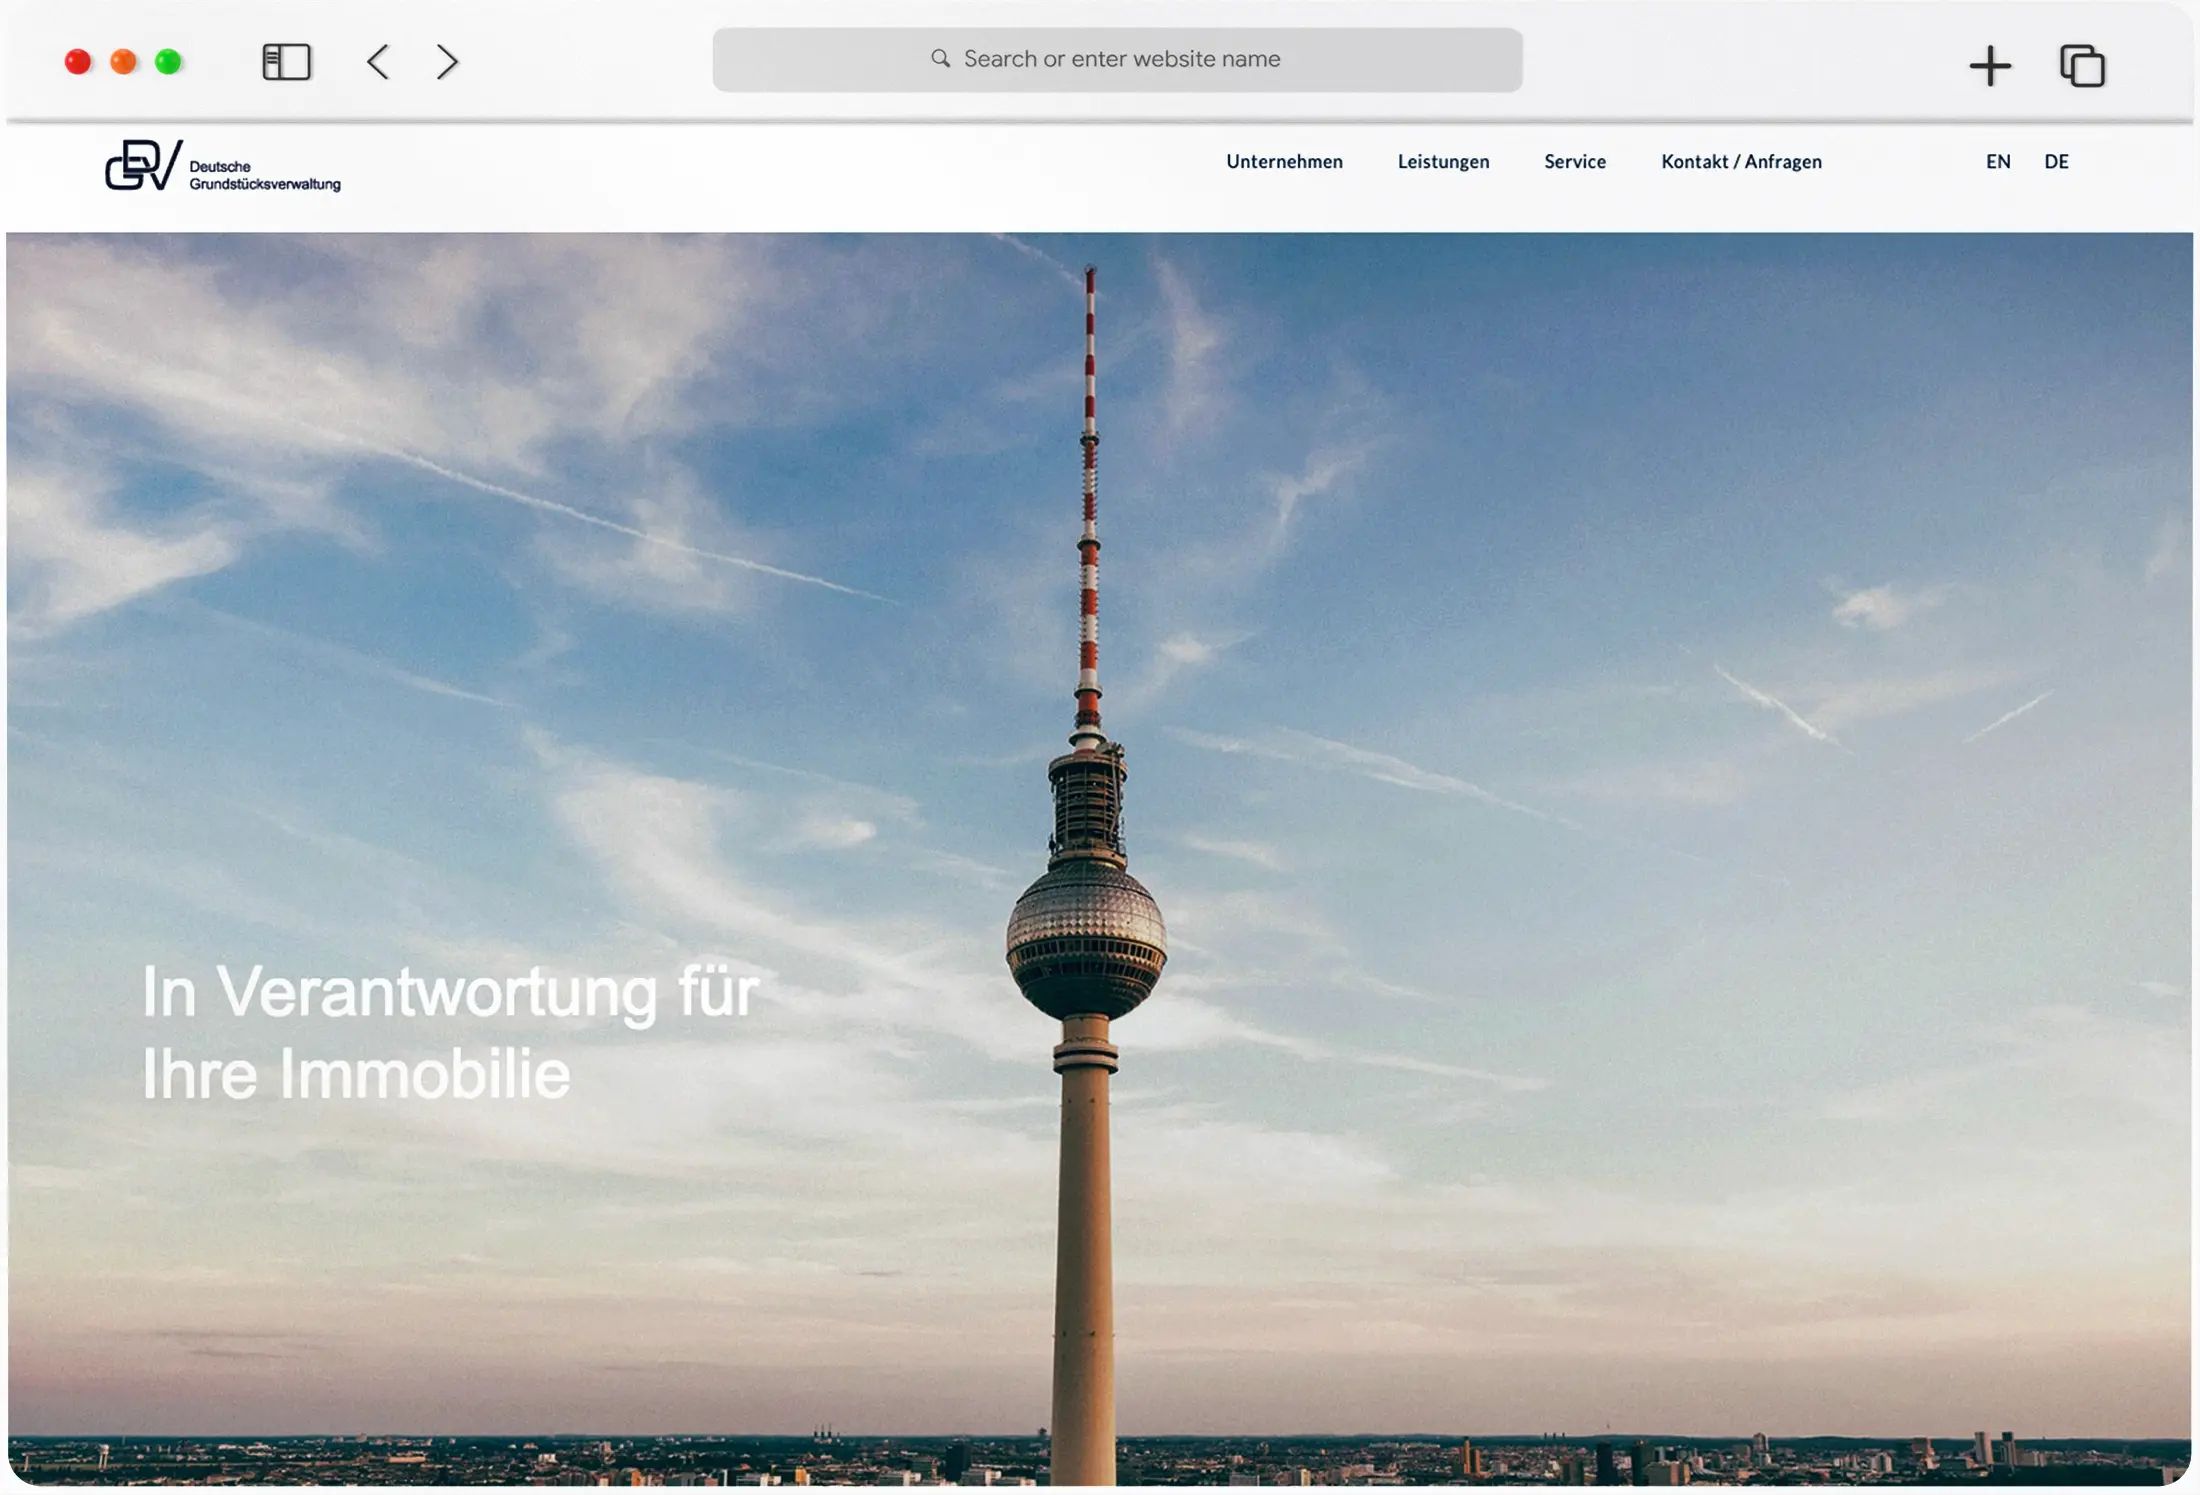 WordPress-Elementor Website für DGV - German property management